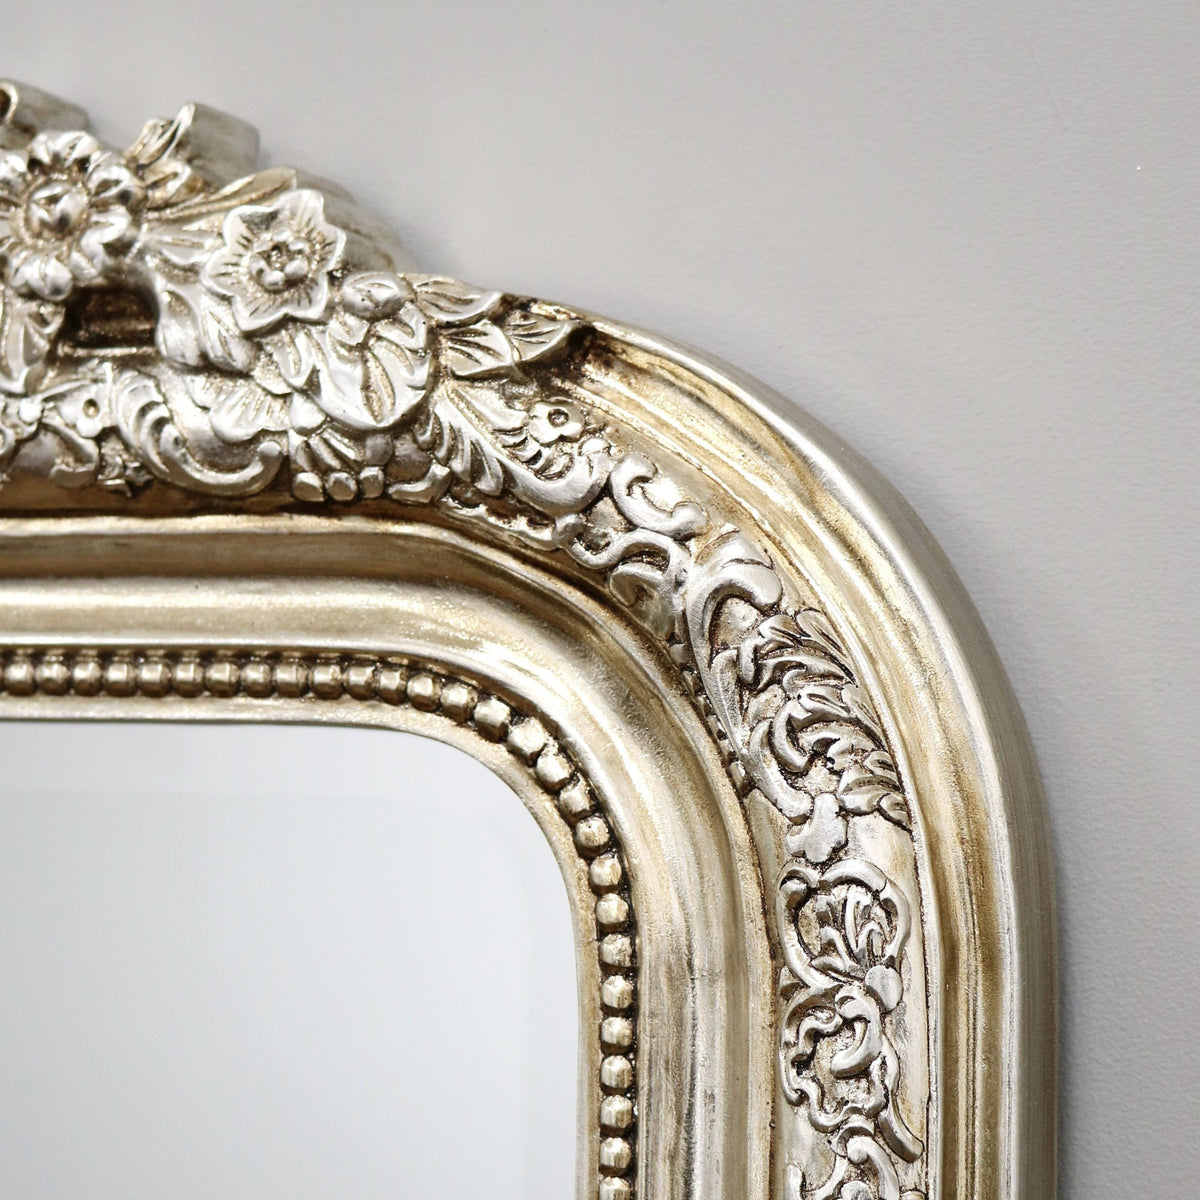  Full Length Champagne Ornate Mirror detail shot of frame corner